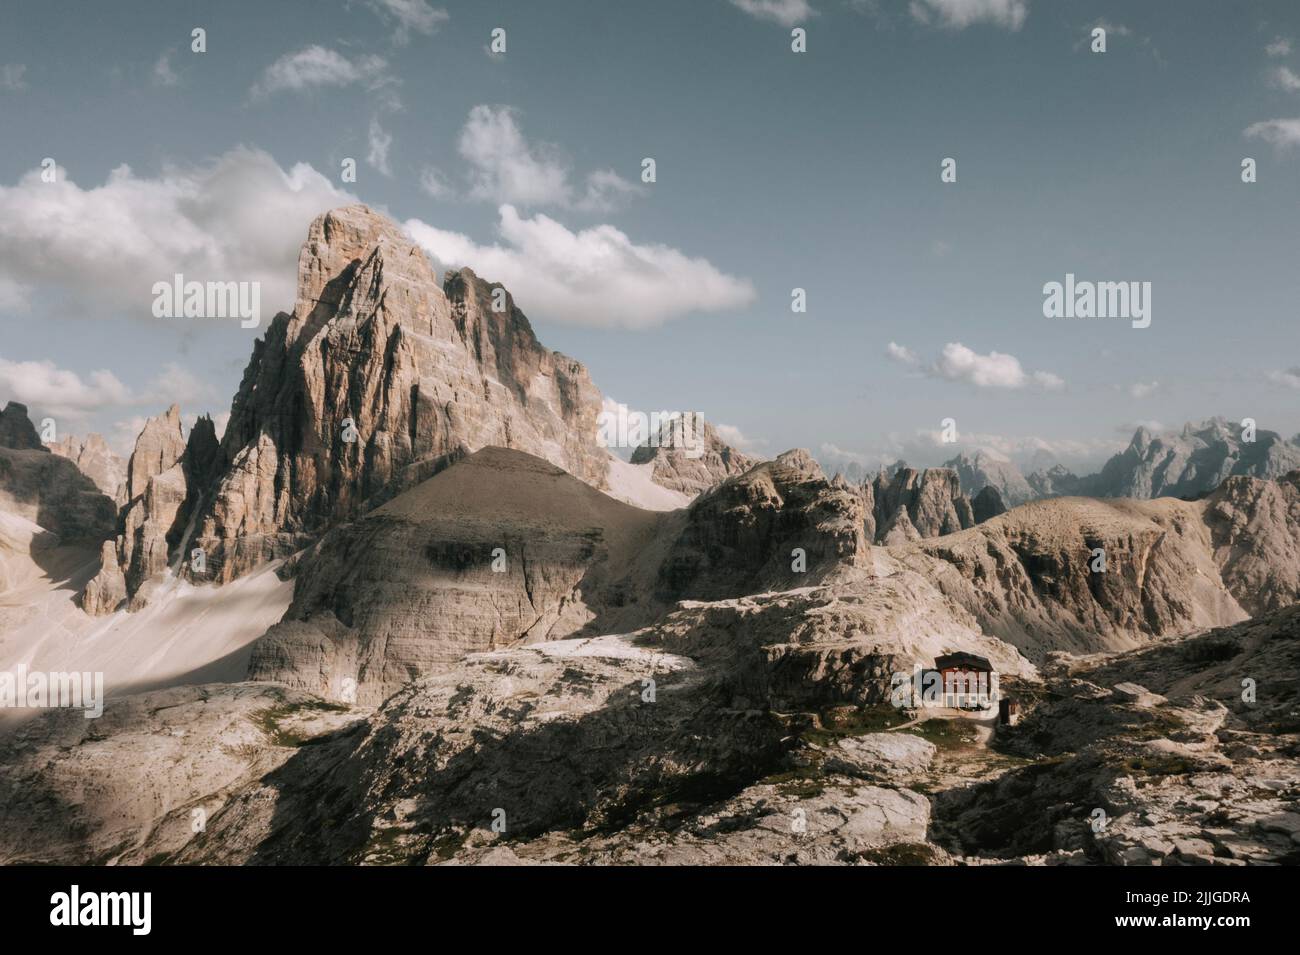 Drohenbild von der Büllelejochhütte ( Rifugio pian di cengia) und im hintergrund der Zwölferkofel (Crdoa dei Toni) 2 Stock Photo